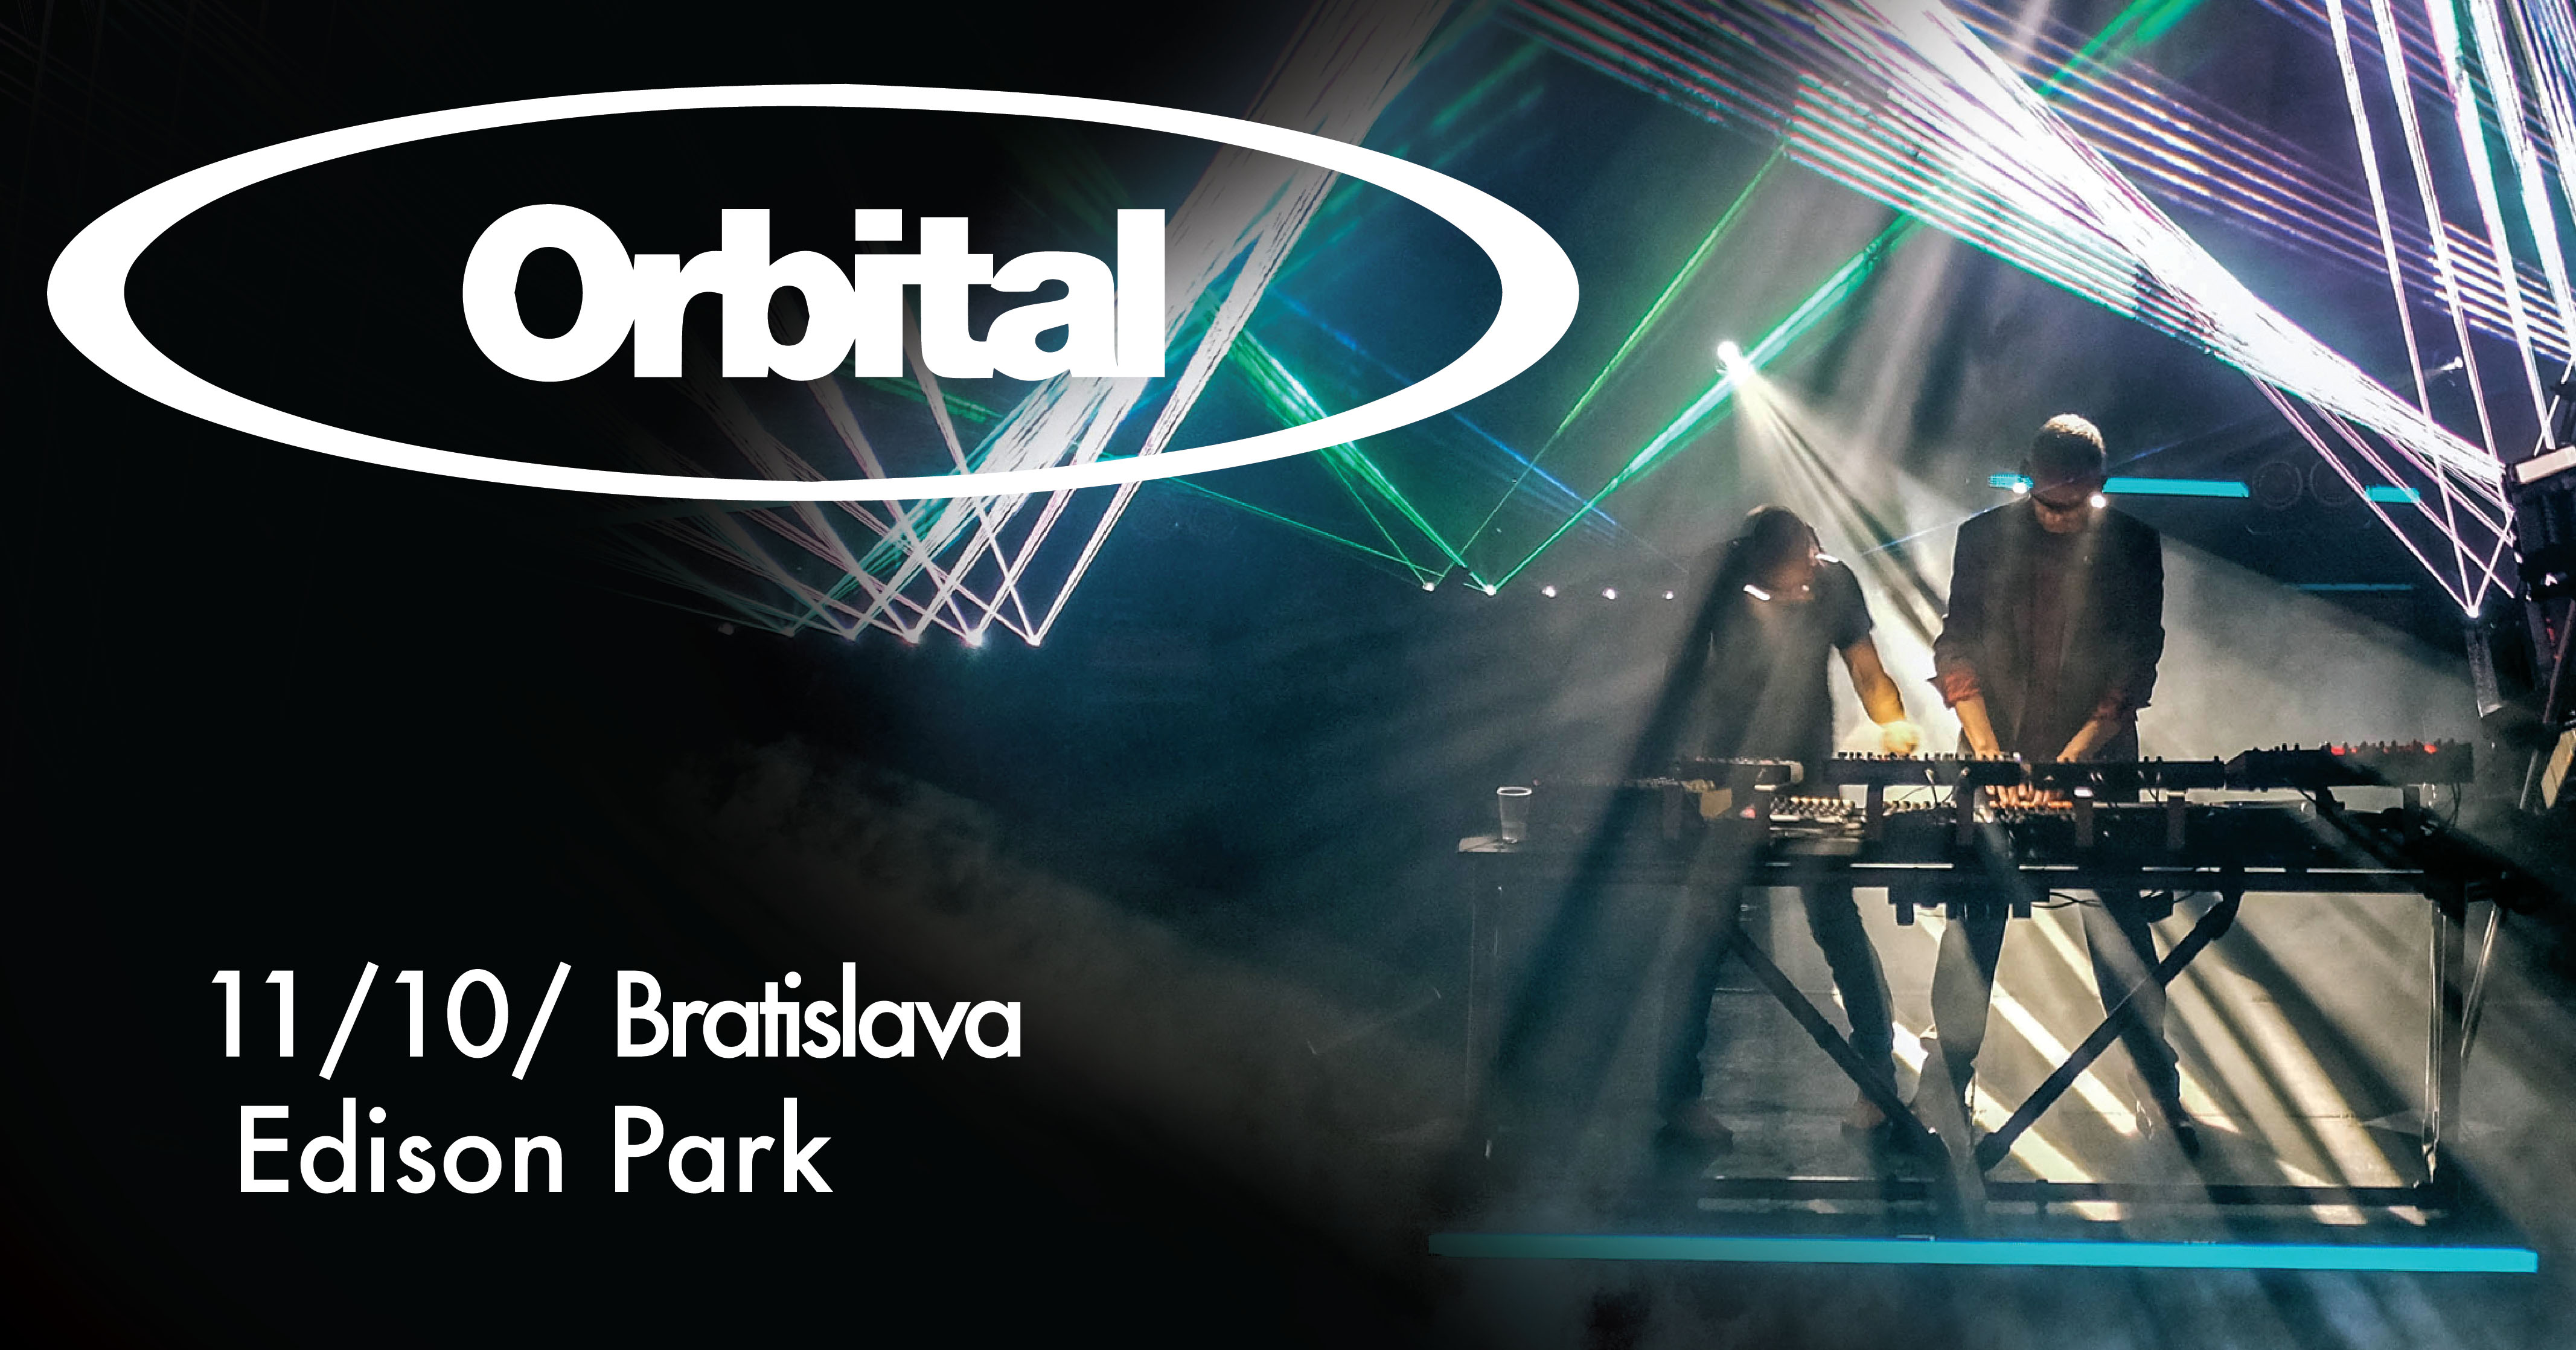 Legendy elektronickej hudby Orbital zahrajú v Bratislave!